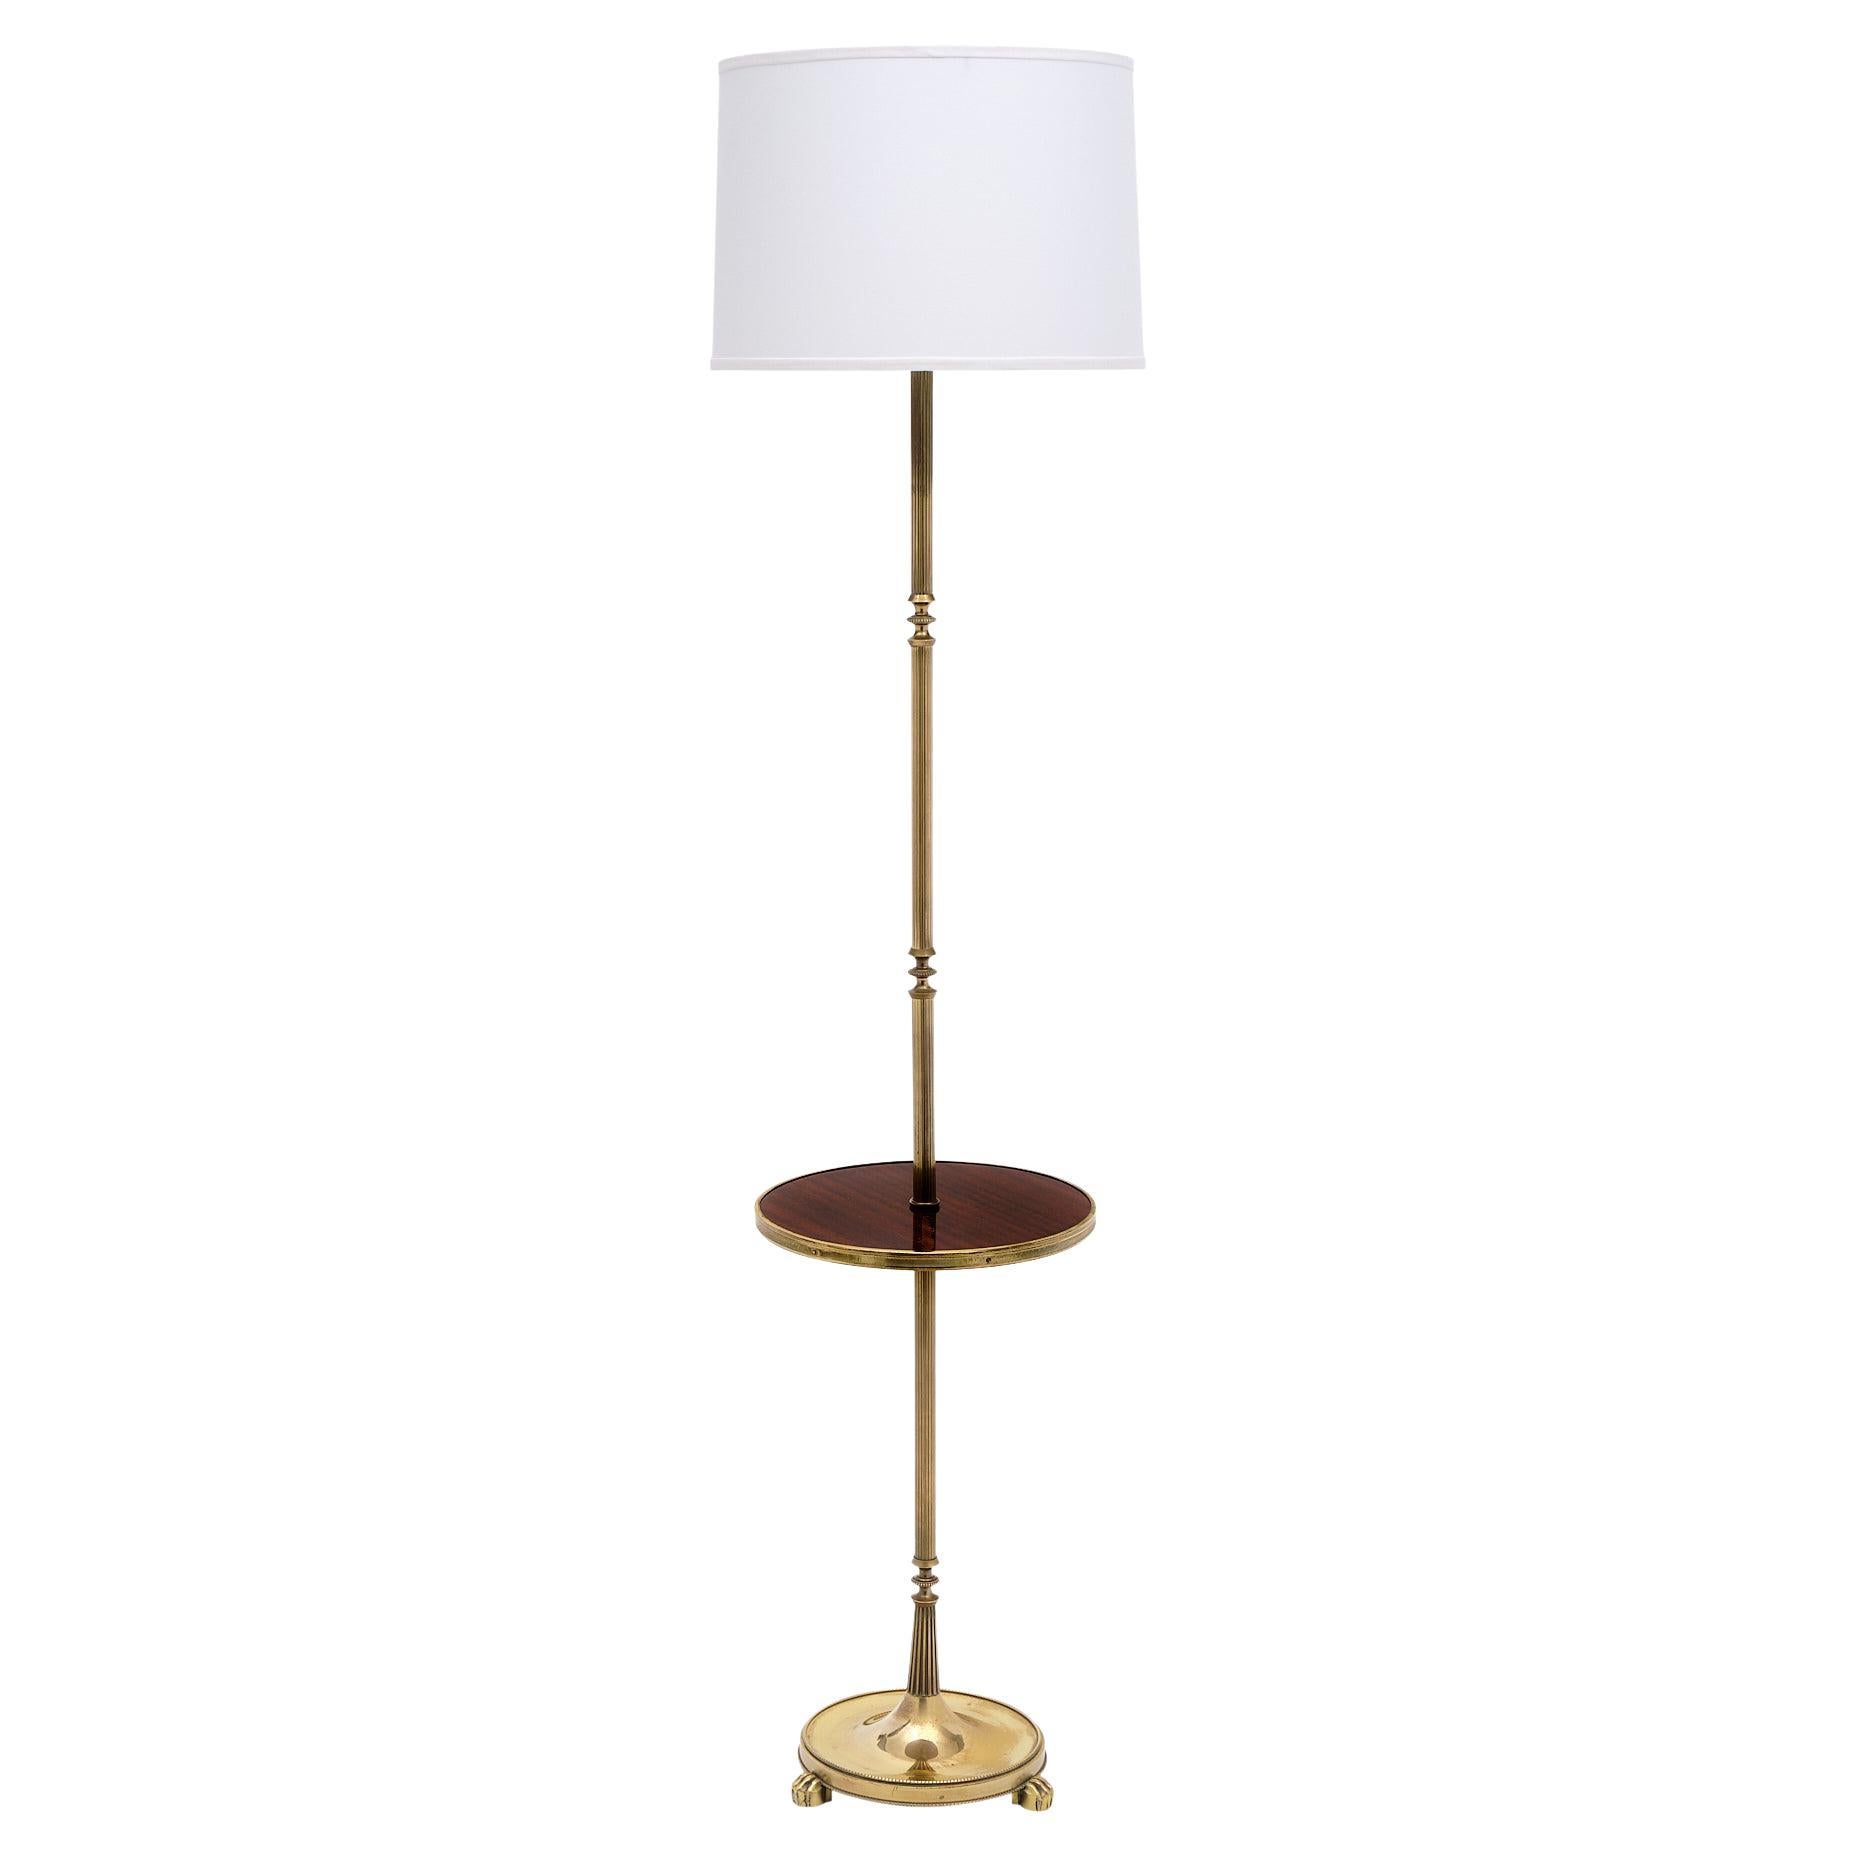 Maison Jansen Floor Lamp For Sale